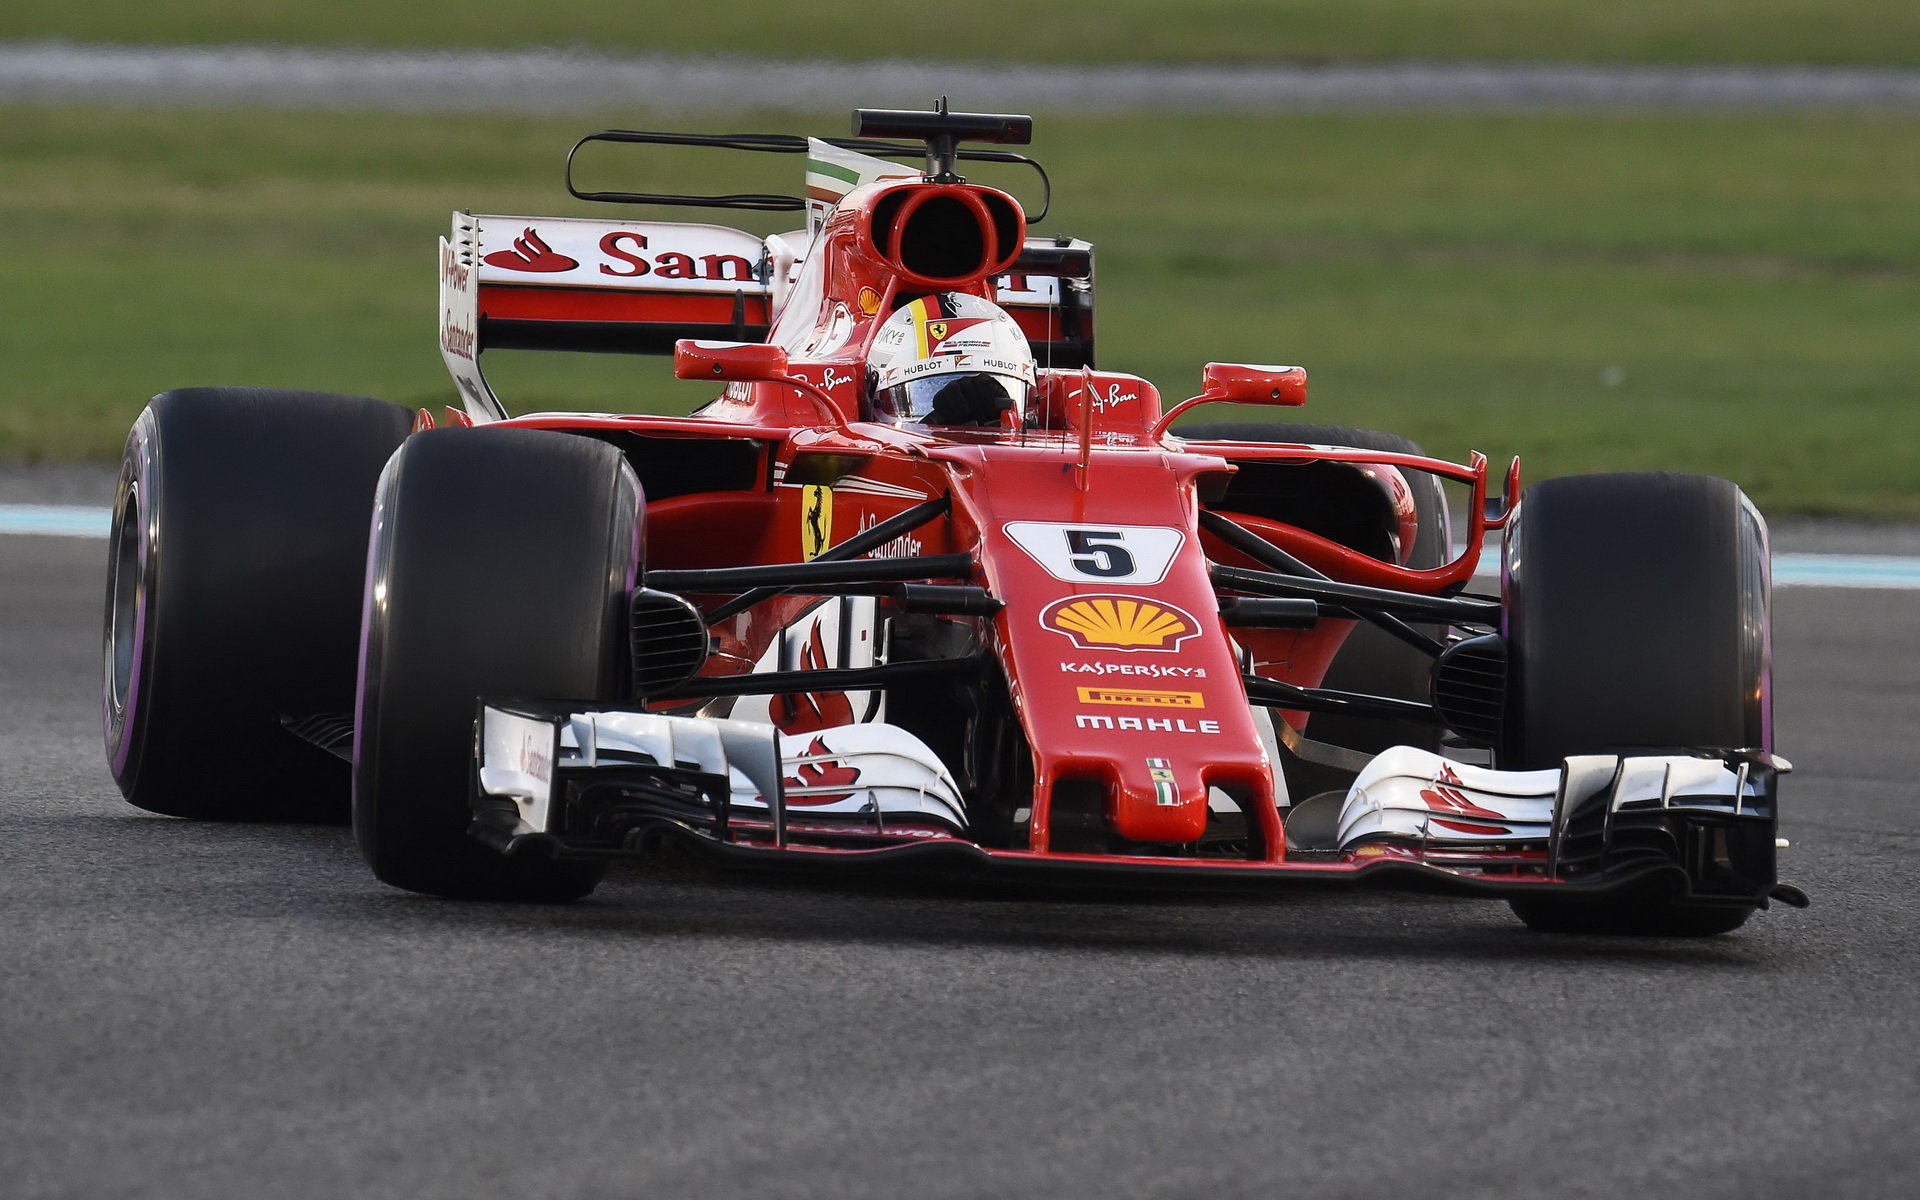 Ferrari momentálně patří Sebastianovi Vettelovi, Lewis Hamilton o přestupu do Maranella vůbec neuvažuje